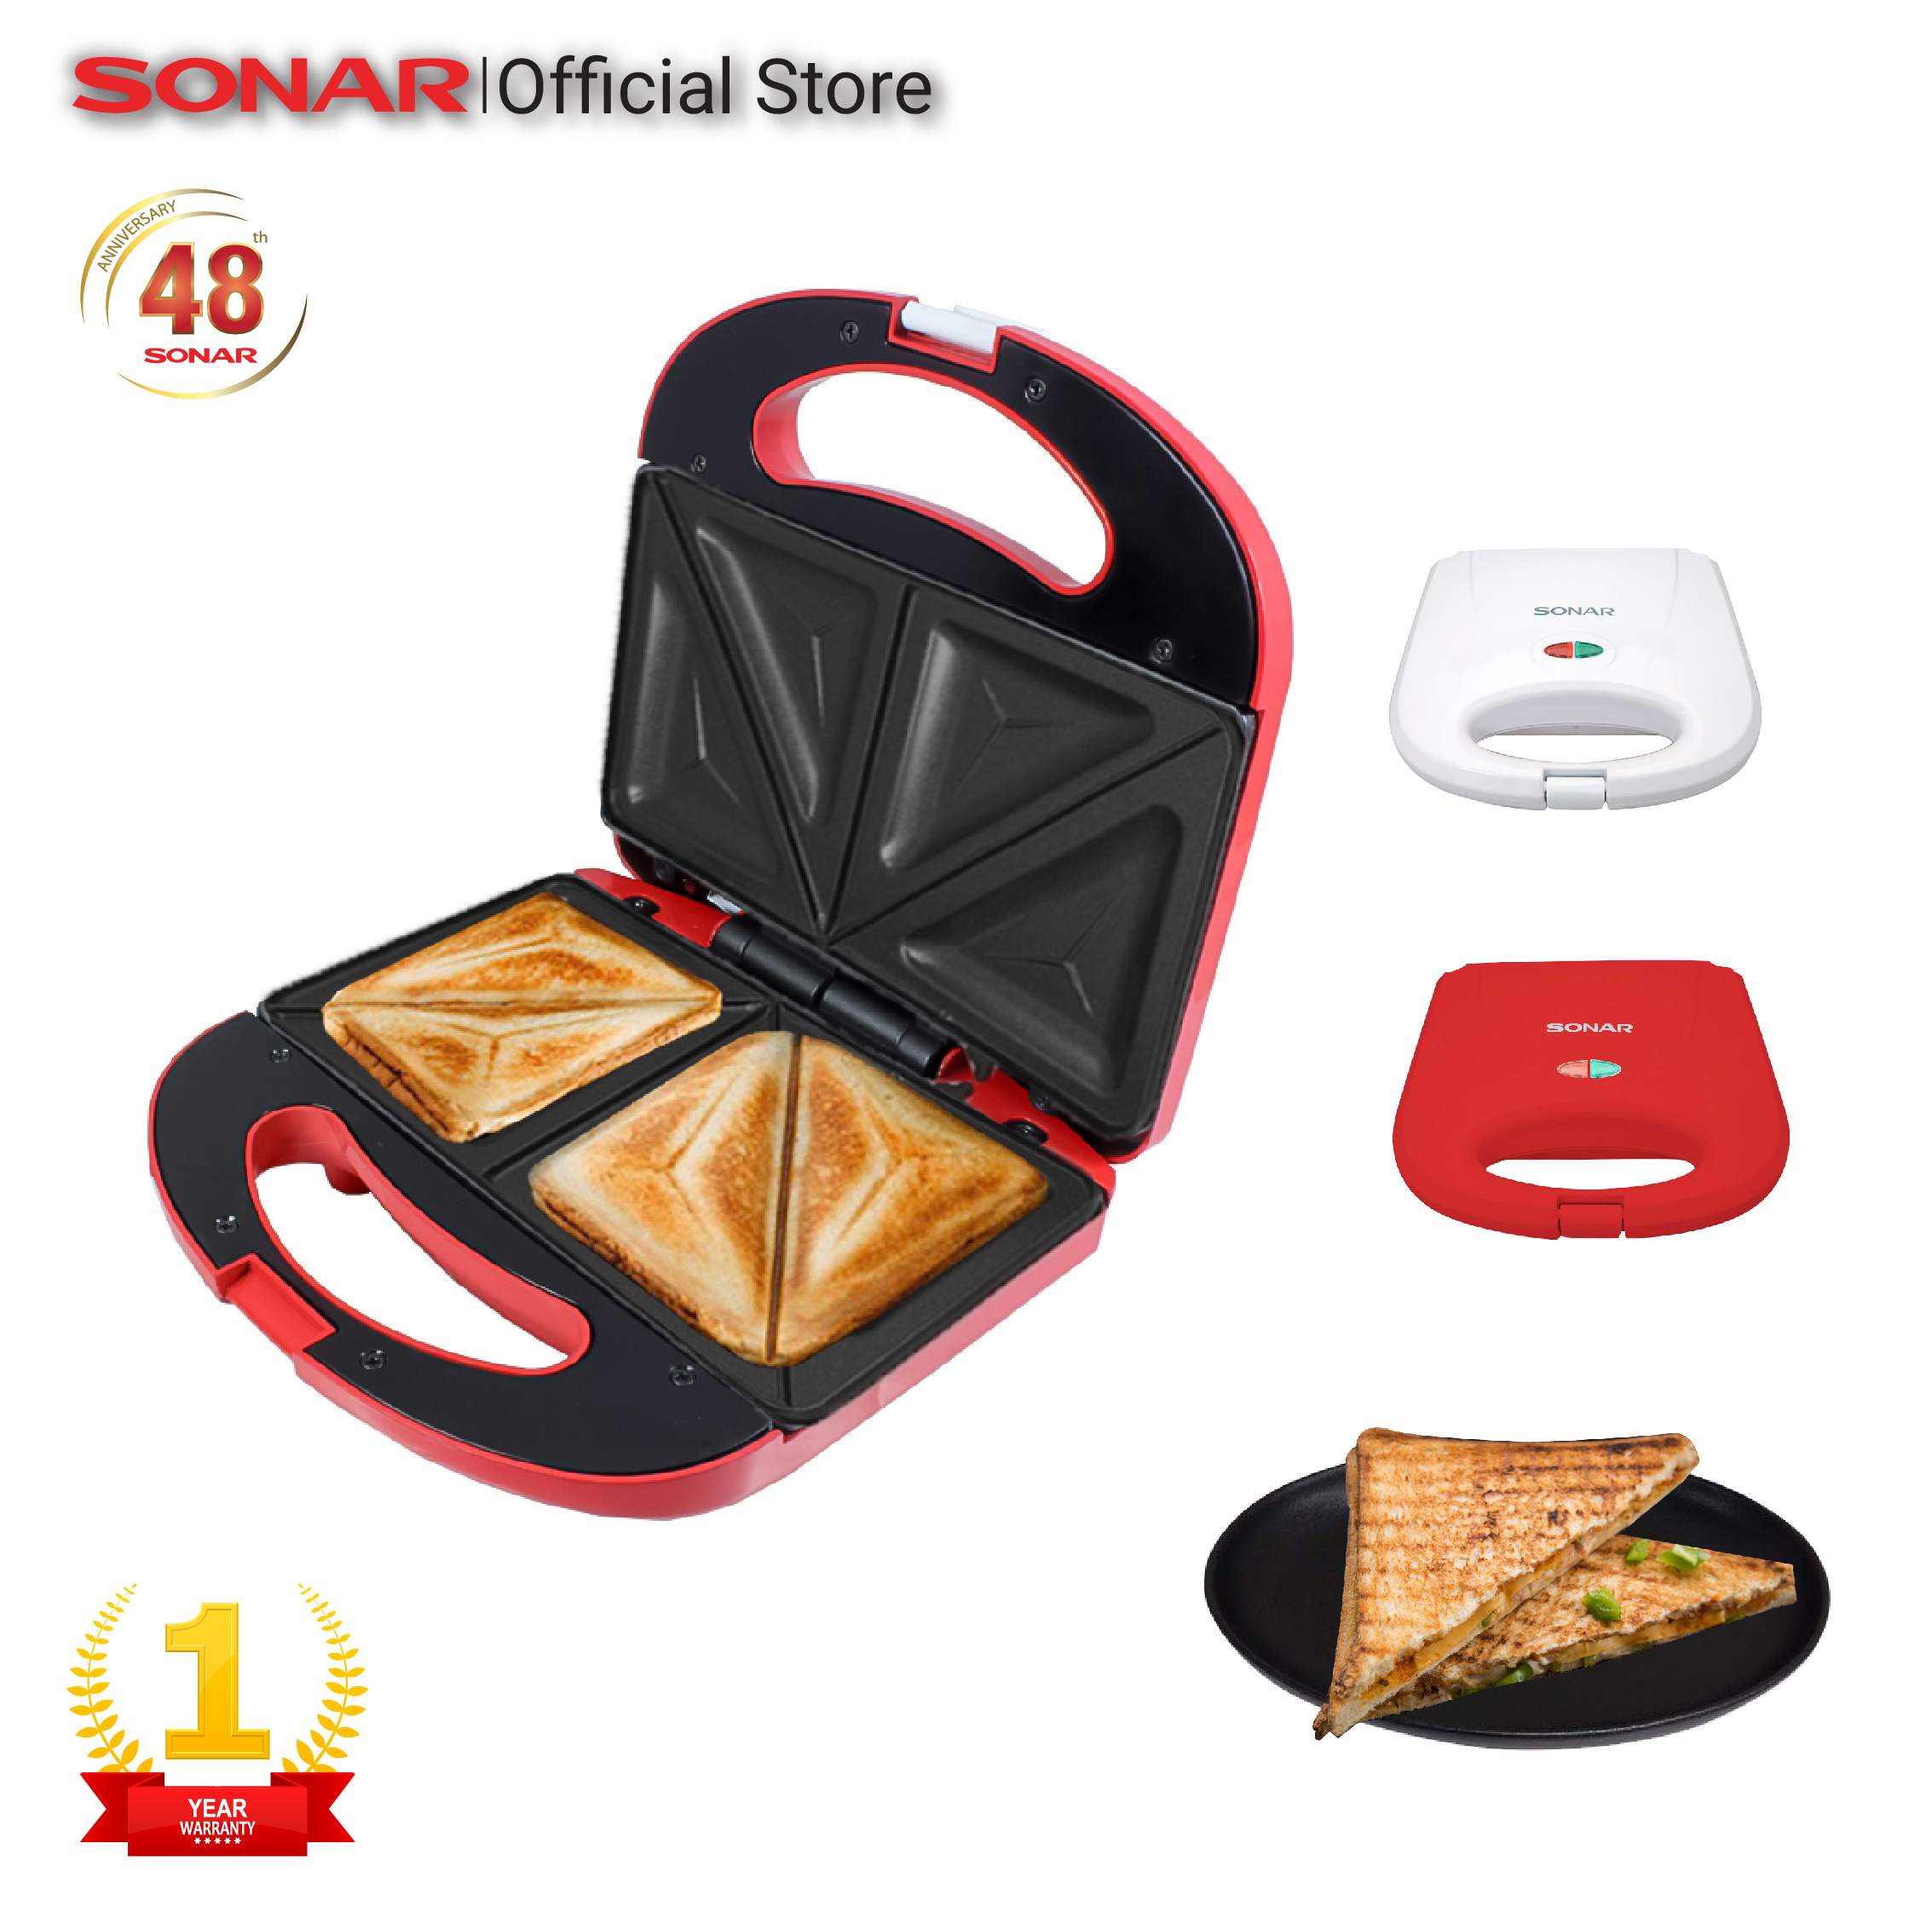 SONAR เครื่องทำแซนด์วิช ที่ทำขนม ที่ทำแซนวิช อาหารเช้า เครื่องทำขนมแซนด์วิช รุ่น SM-S021